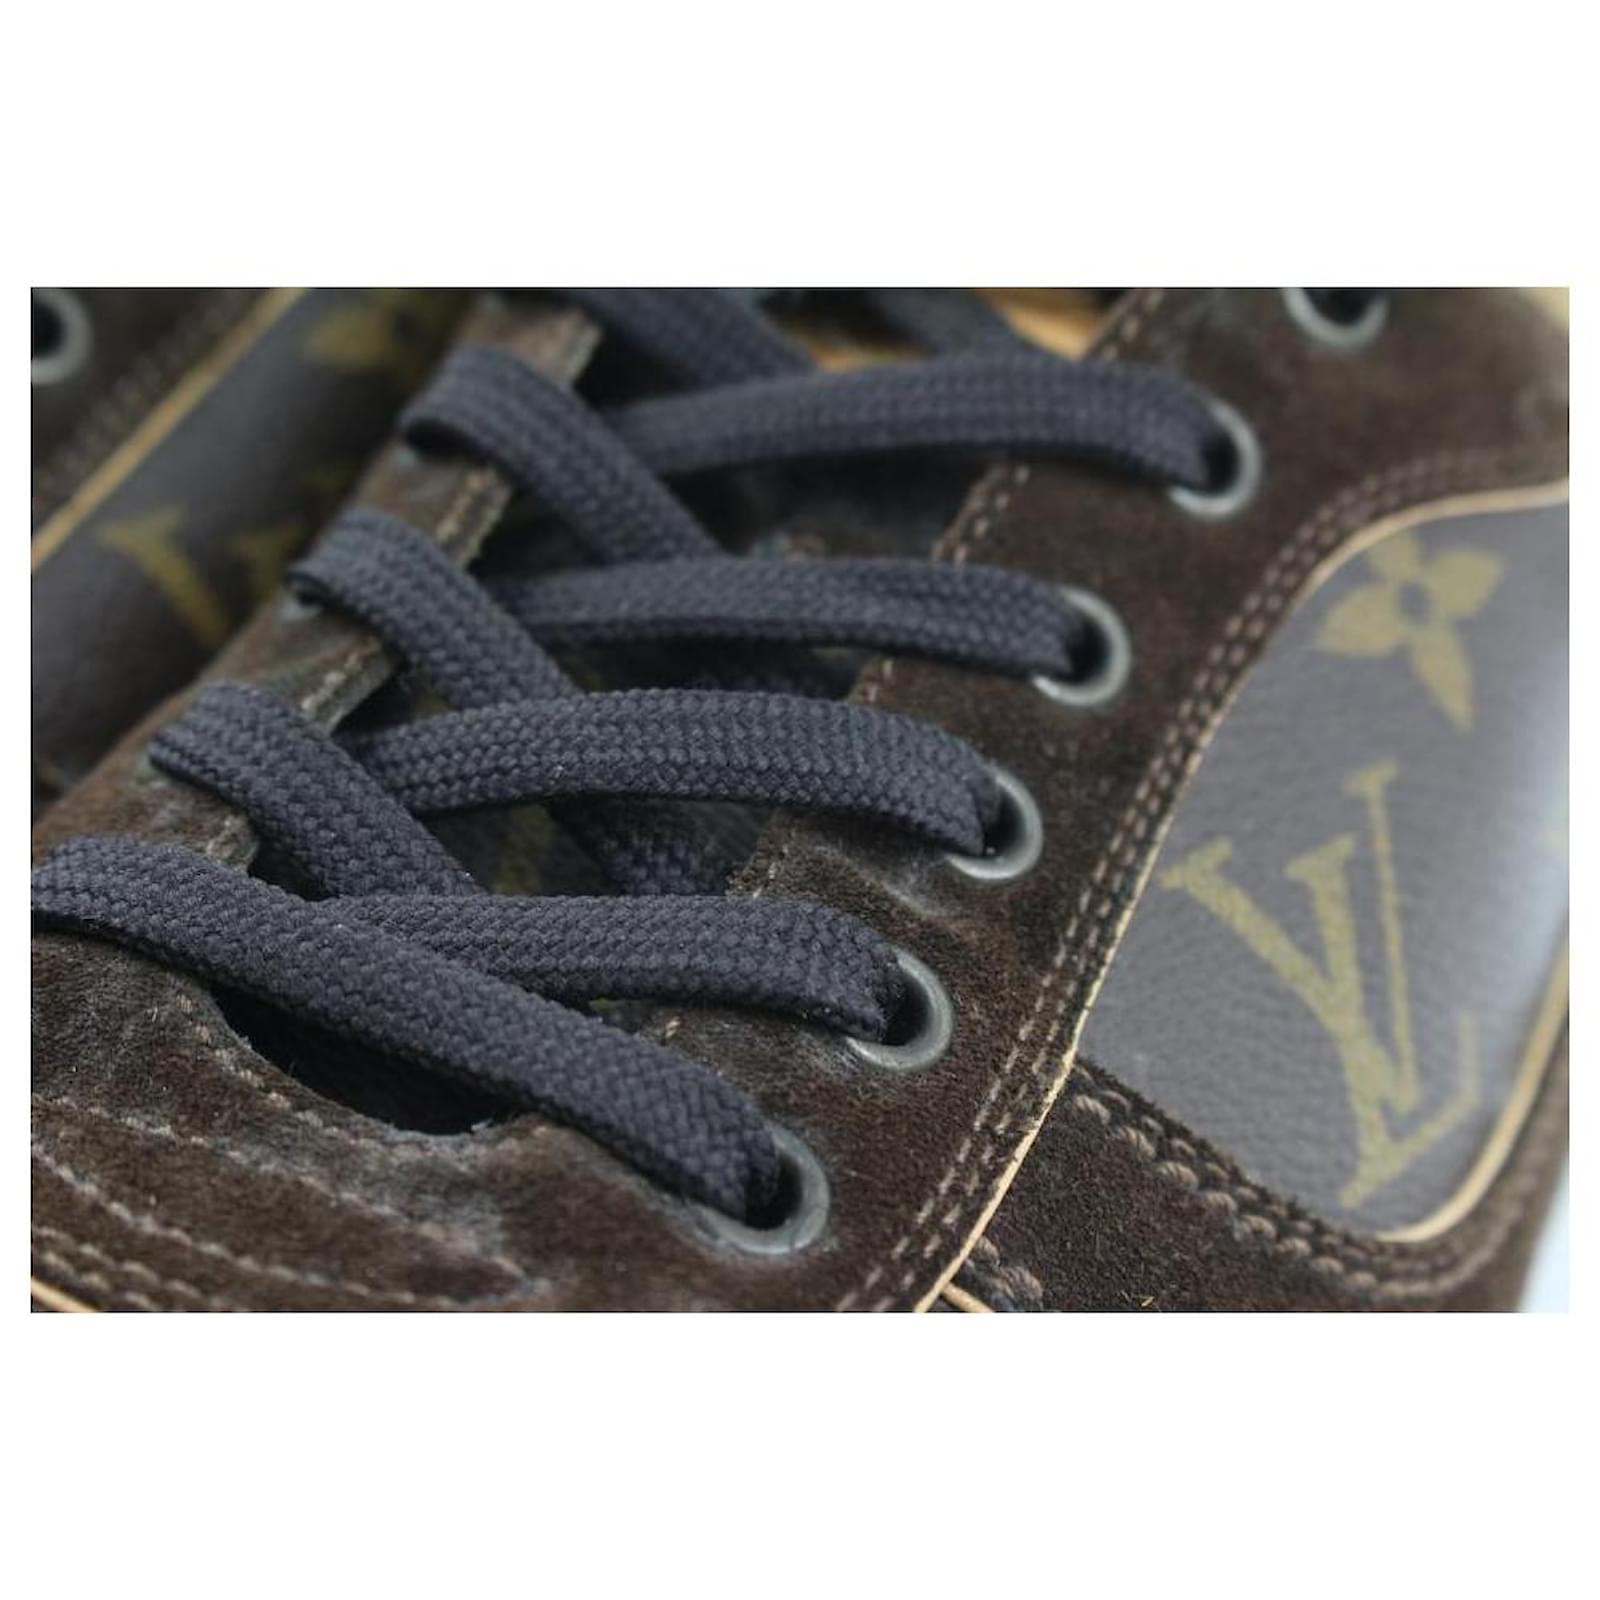 LOUIS VUITTON Monogram Suede Energie Sneakers 37.5 Brown 256179